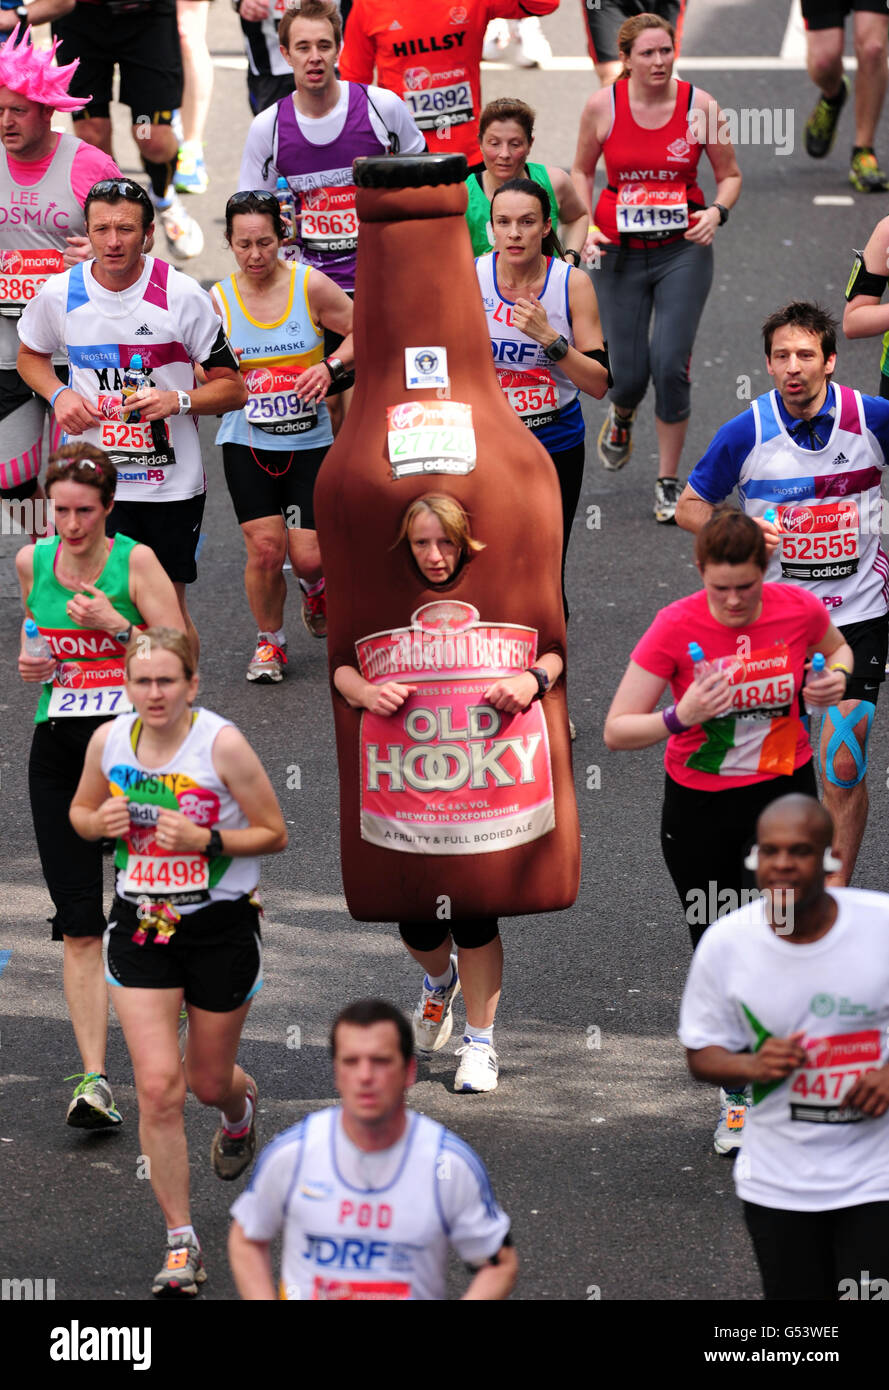 Athlétisme - 32ème marathon de Virgin London.Un concurrent en costume fantaisie lors du 32e marathon de Virgin London à Londres. Banque D'Images